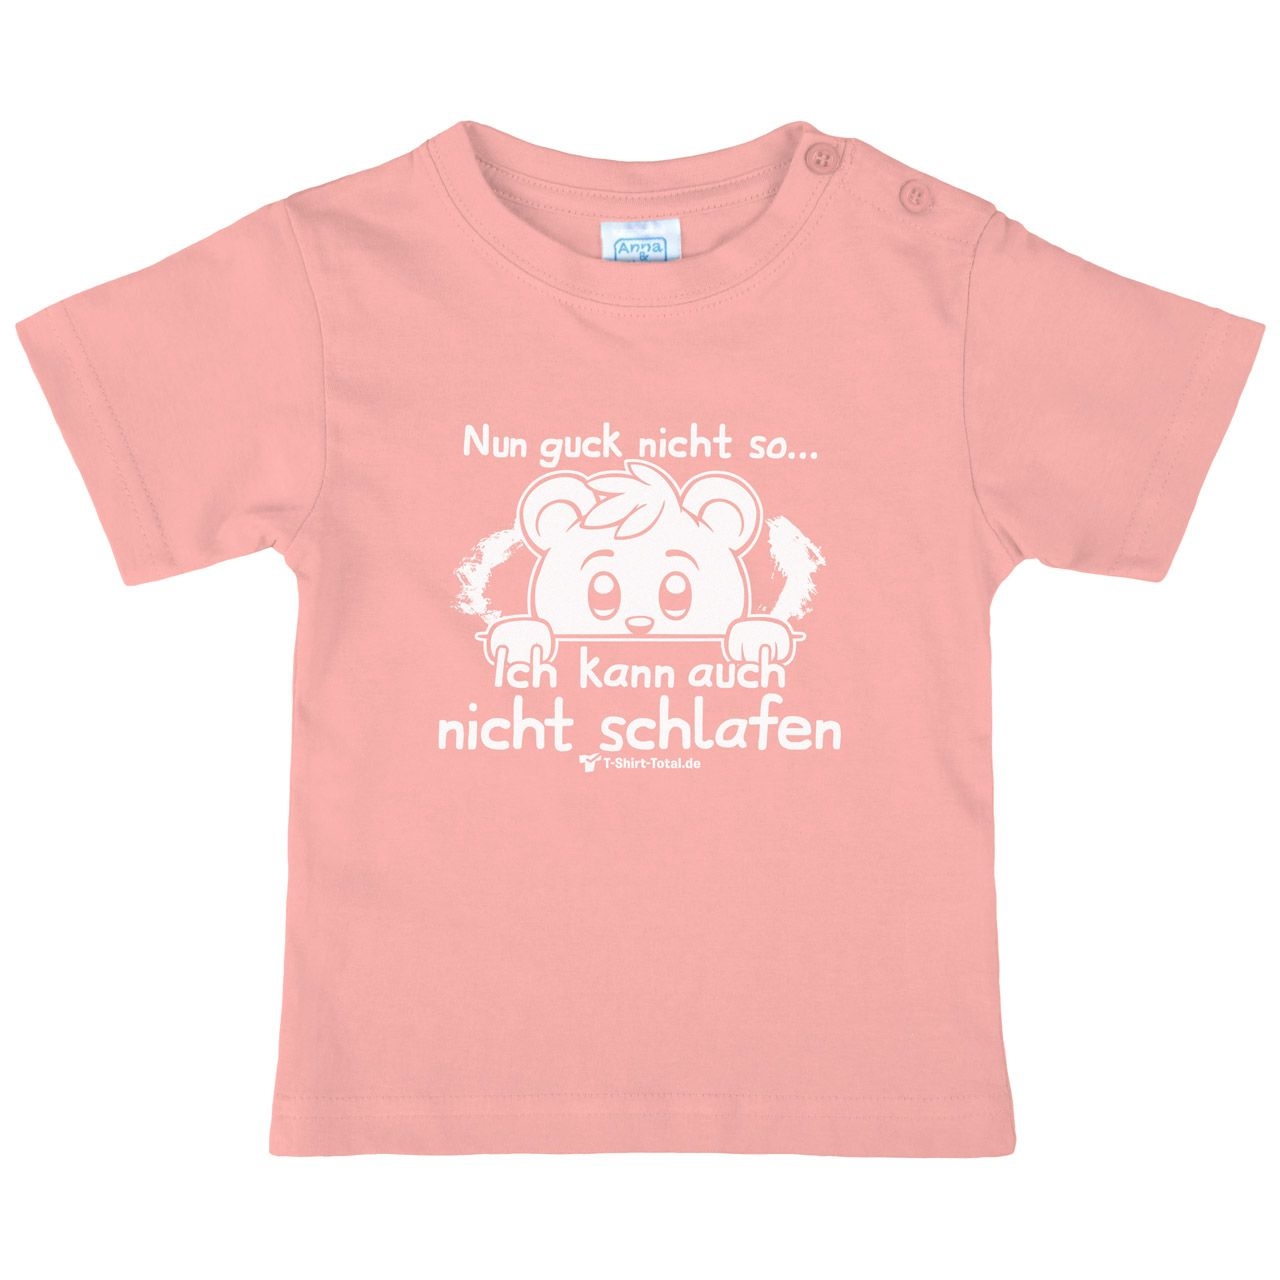 Guck nicht so Kinder T-Shirt rosa 68 / 74